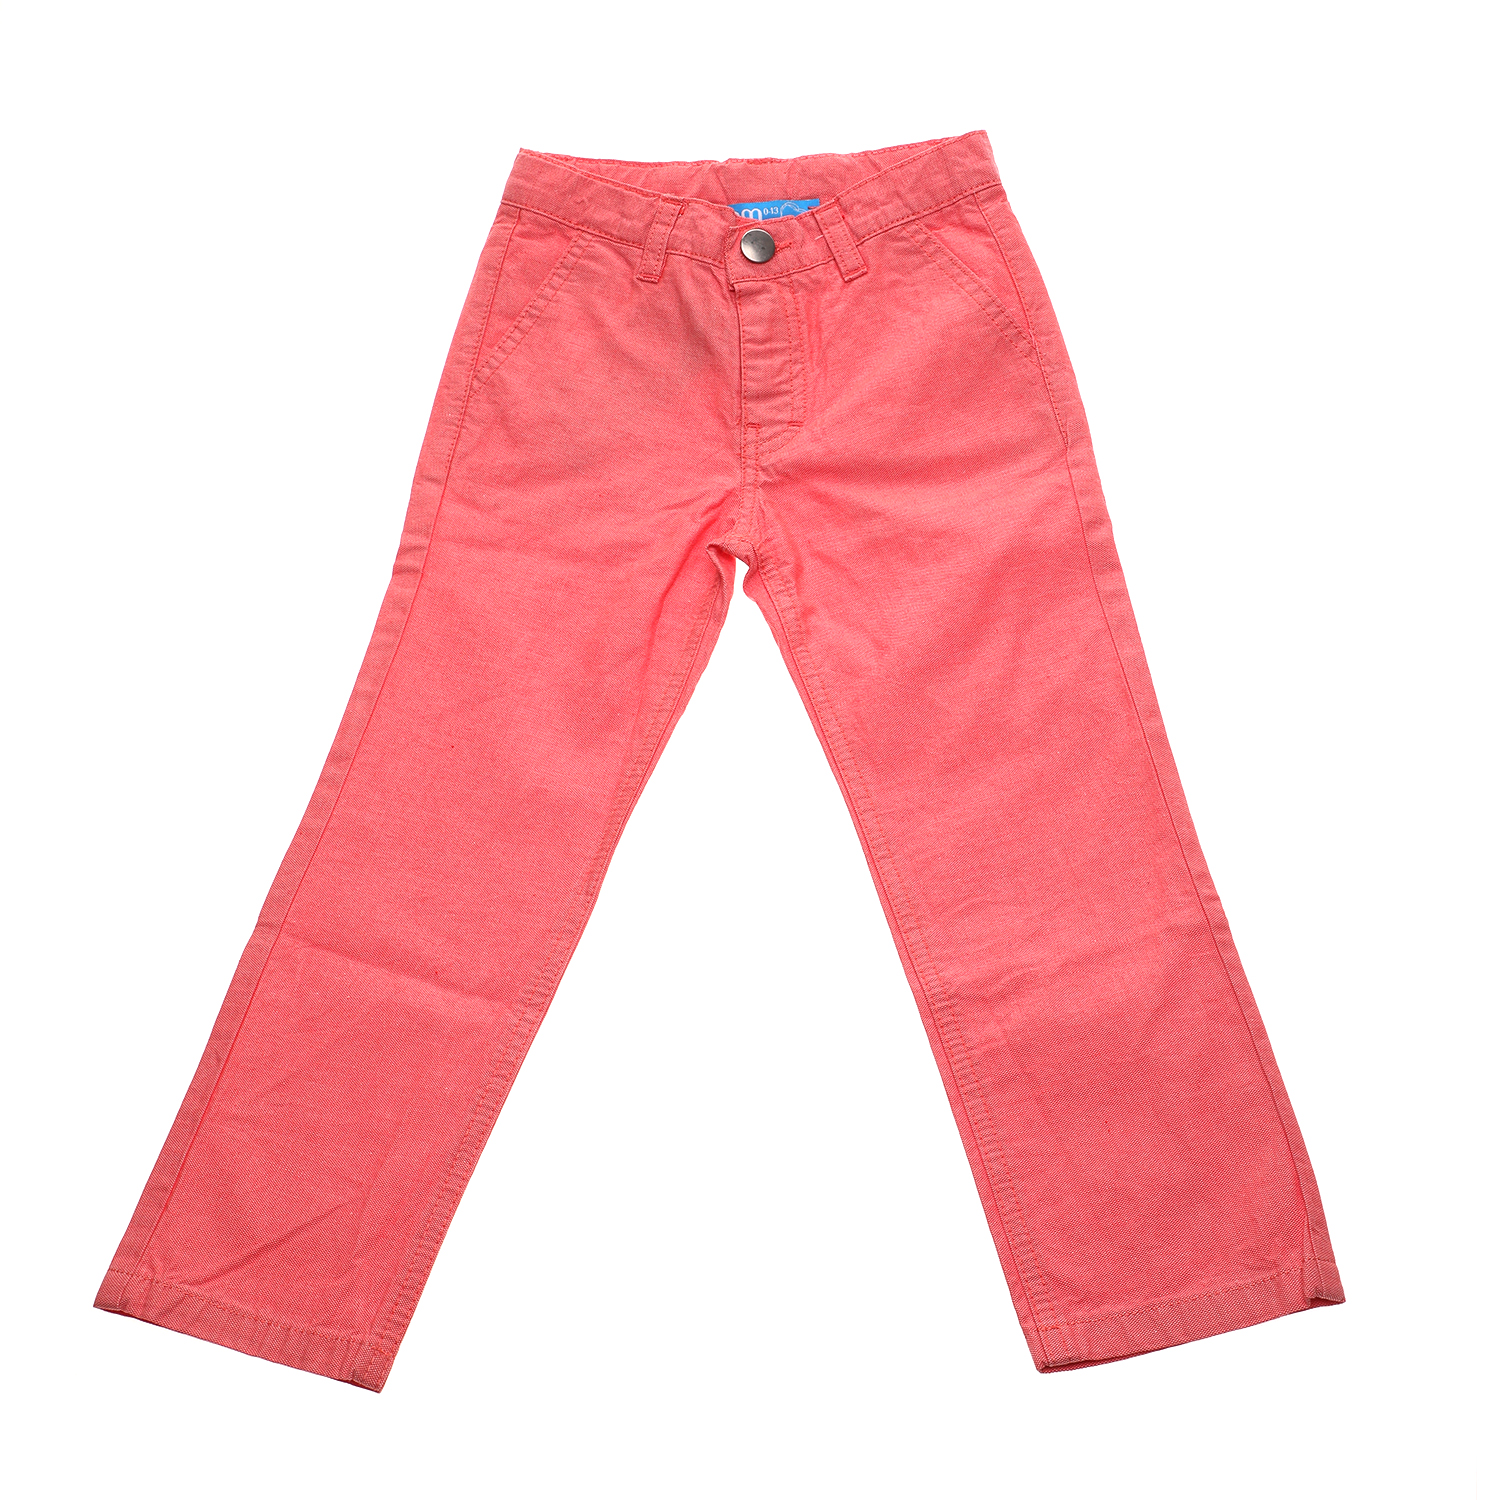 Παιδικά/Baby/Ρούχα/Παντελόνια SAM 0-13 - Παιδικό παντελόνι chino SAM 0-13 κόκκινο